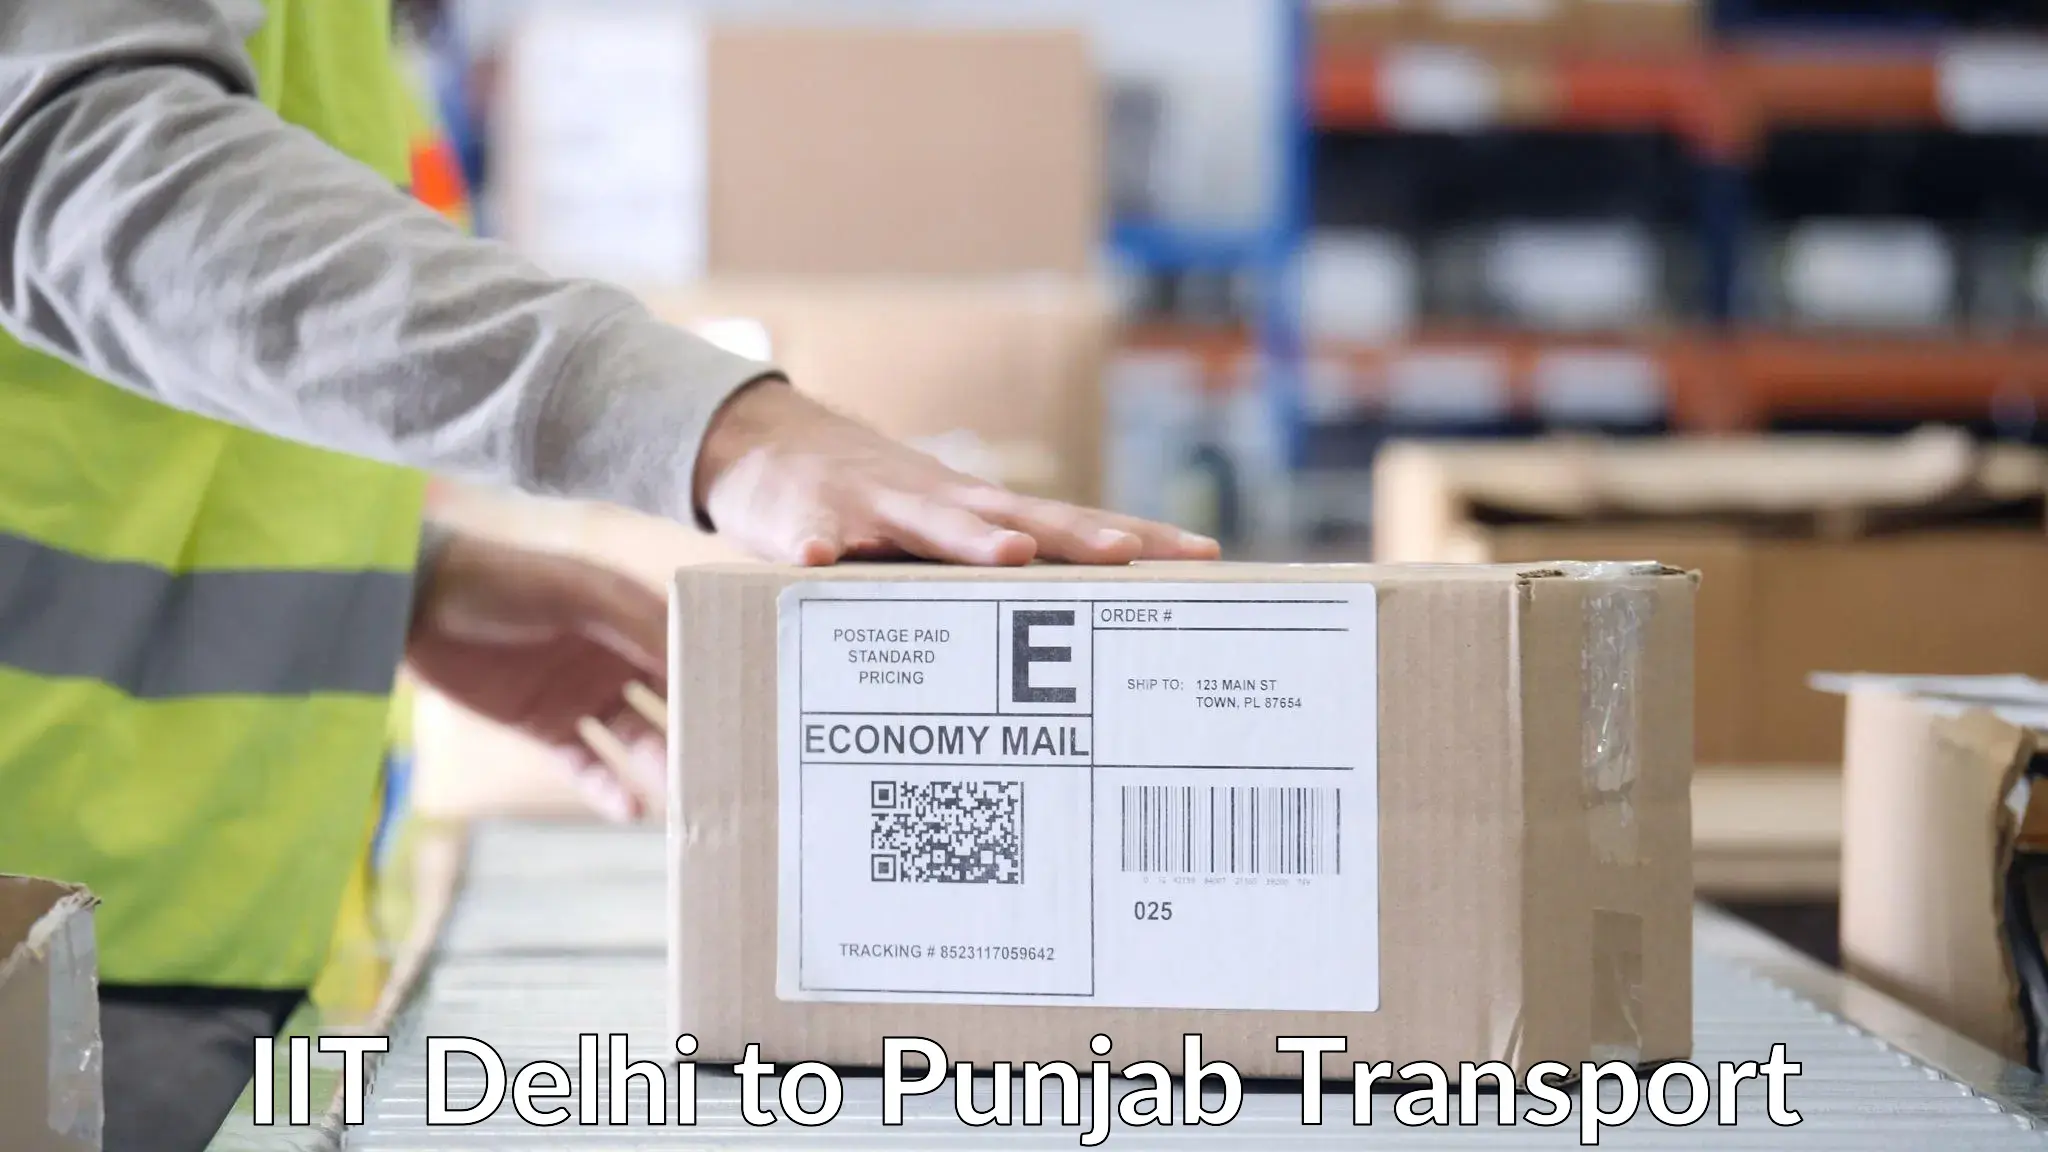 Cargo transport services in IIT Delhi to Kotkapura